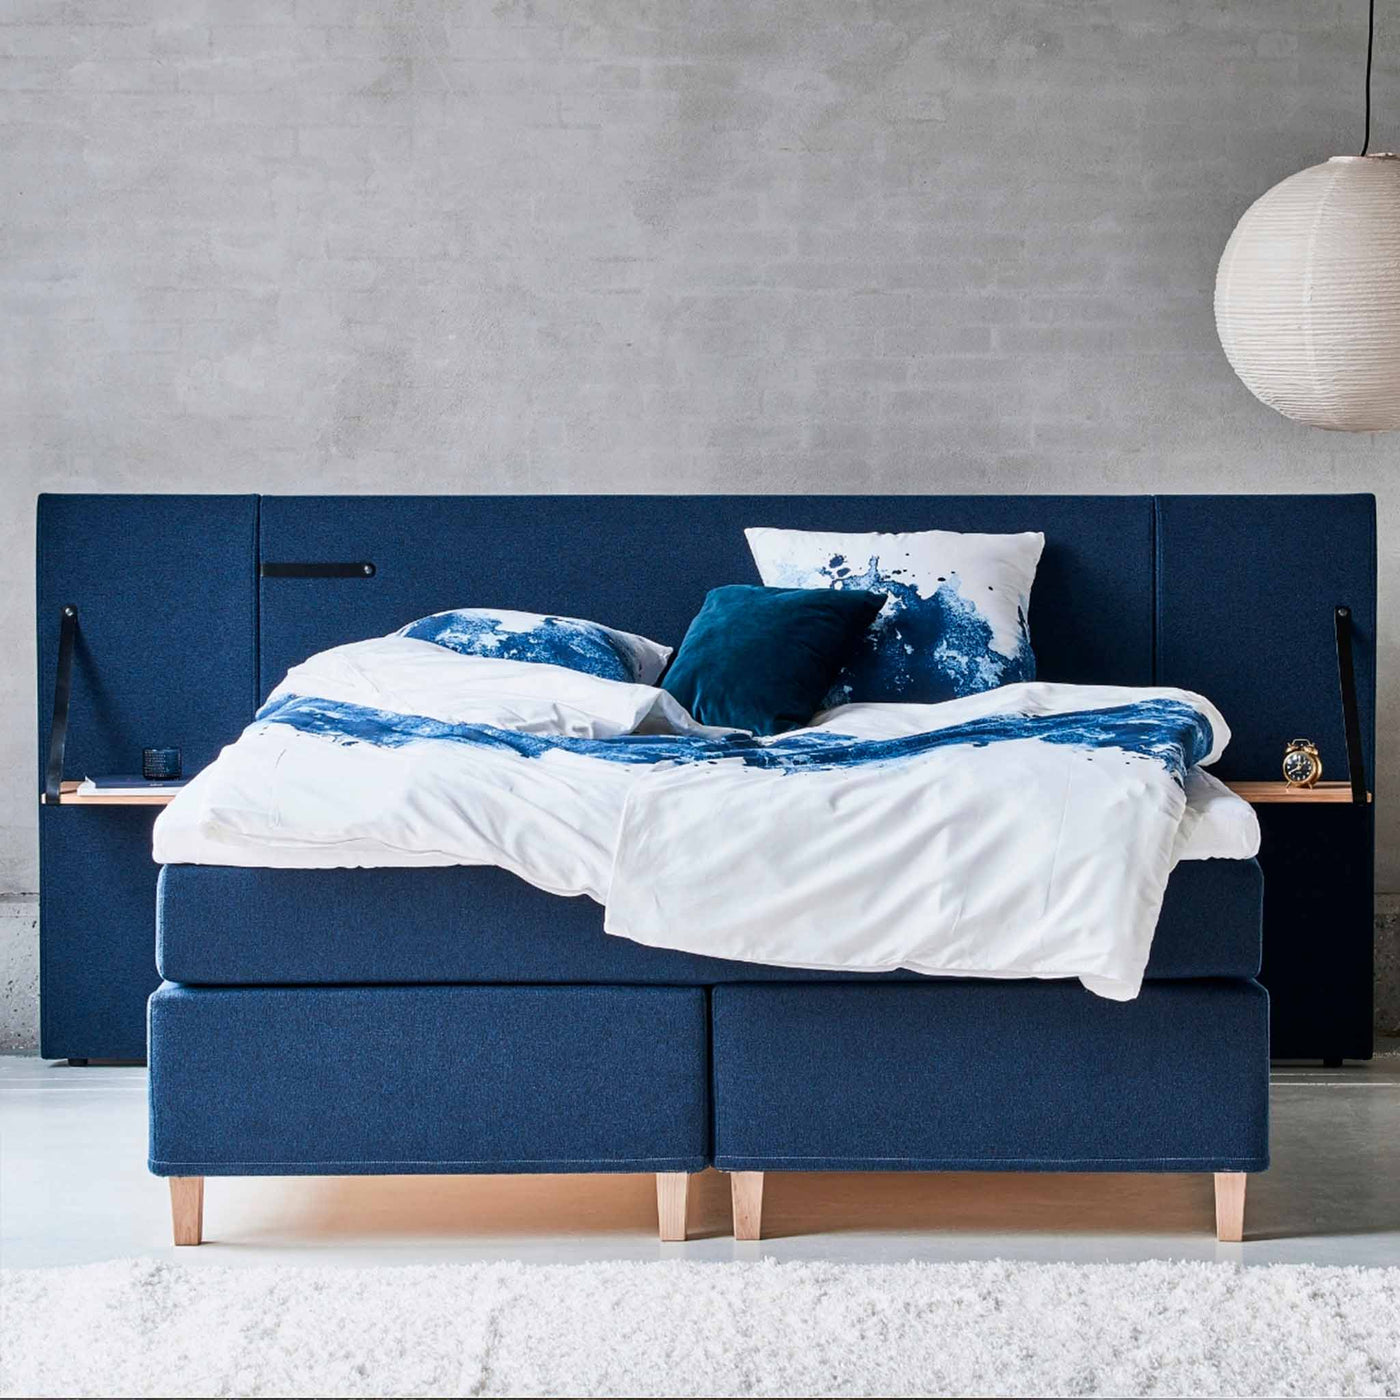 Wing sengegavl inkl. sengeborde fra Opus til 180 cm seng betrukket med stof i flot blå farve.